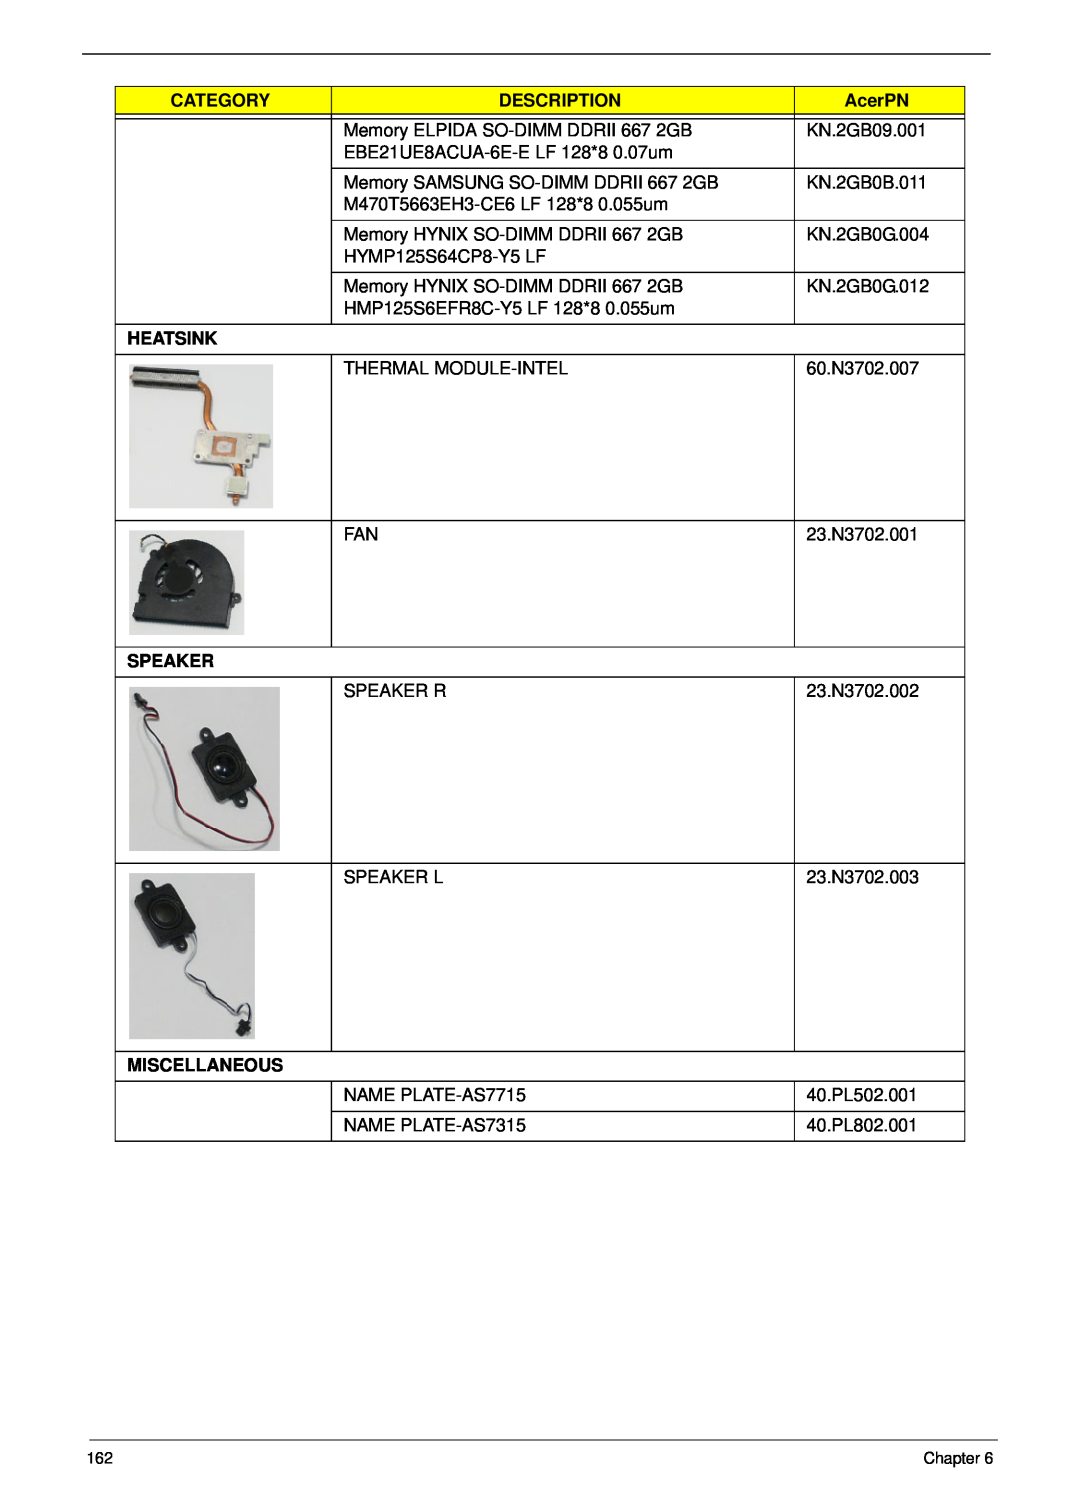 Acer 7715Z, 7315 manual Category, Description, AcerPN, Heatsink, Speaker, Miscellaneous 